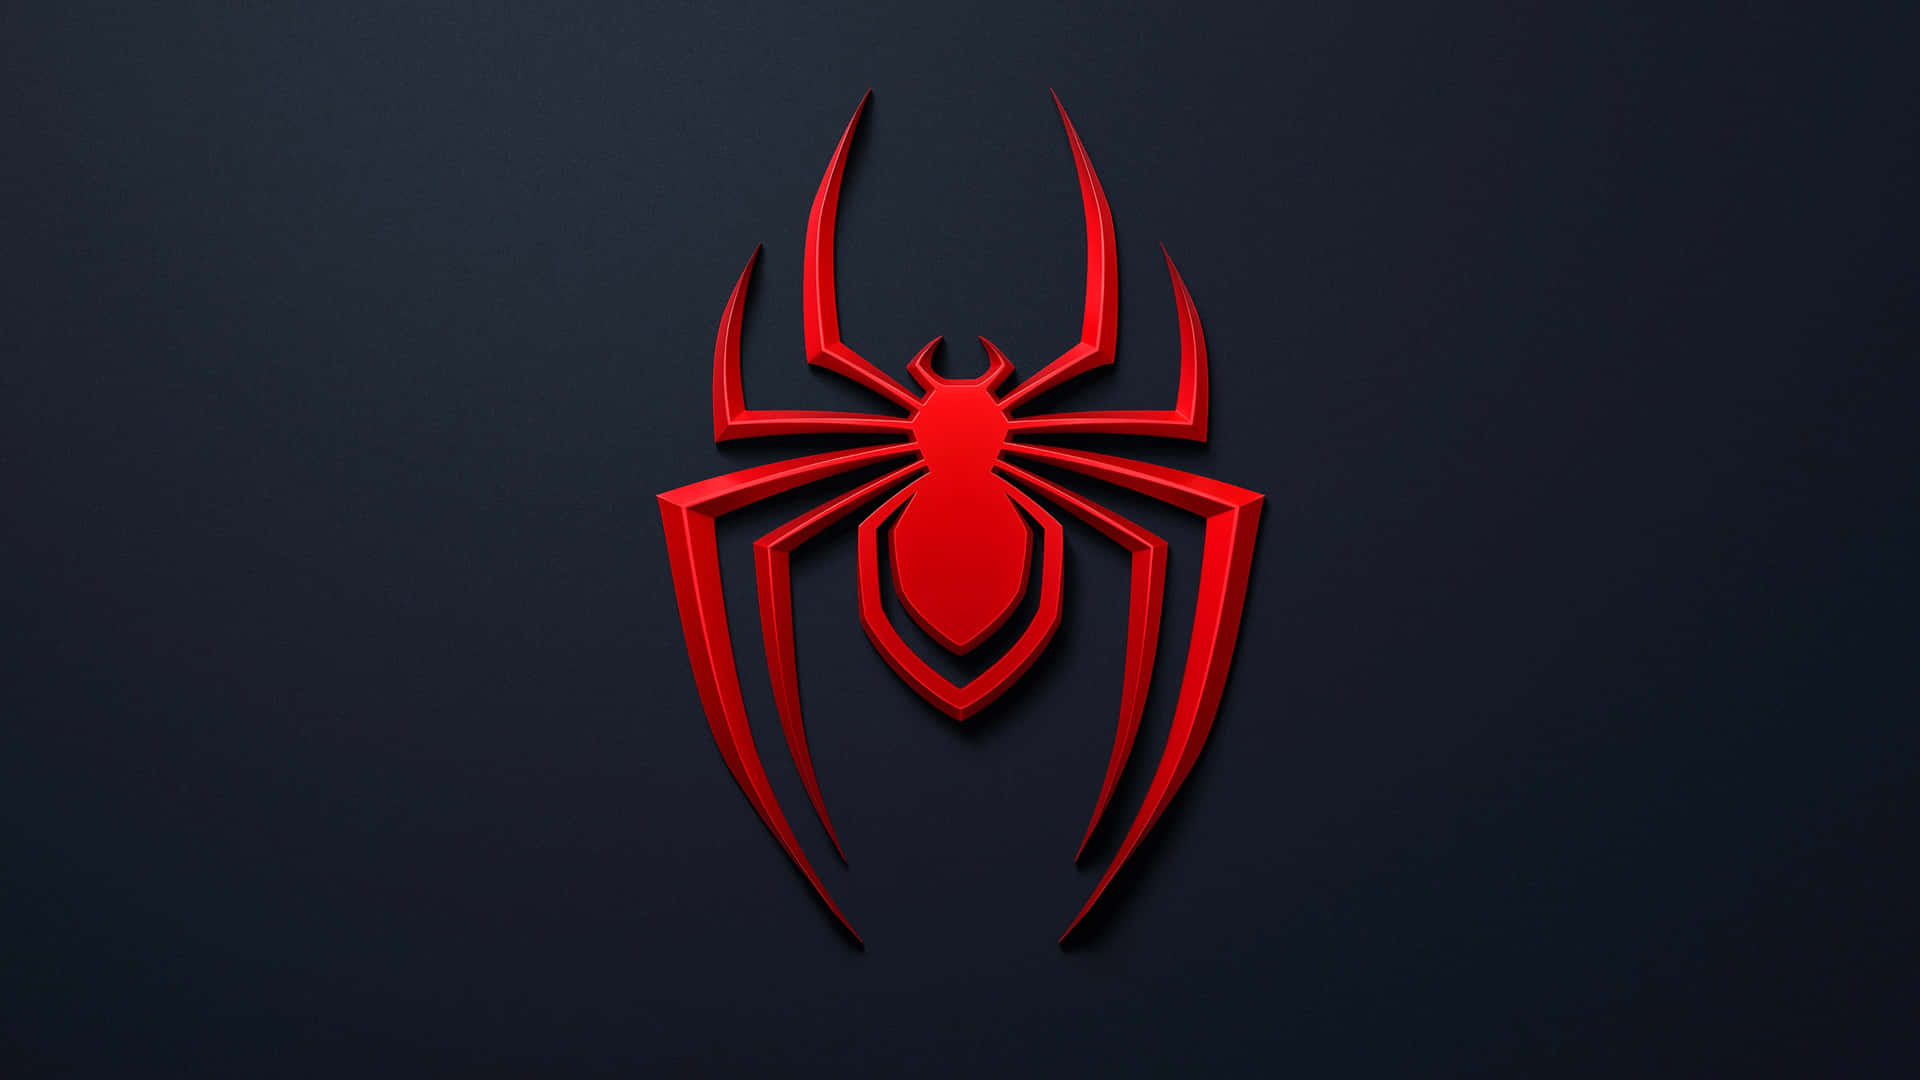 Spider - Man Logo On A Dark Background